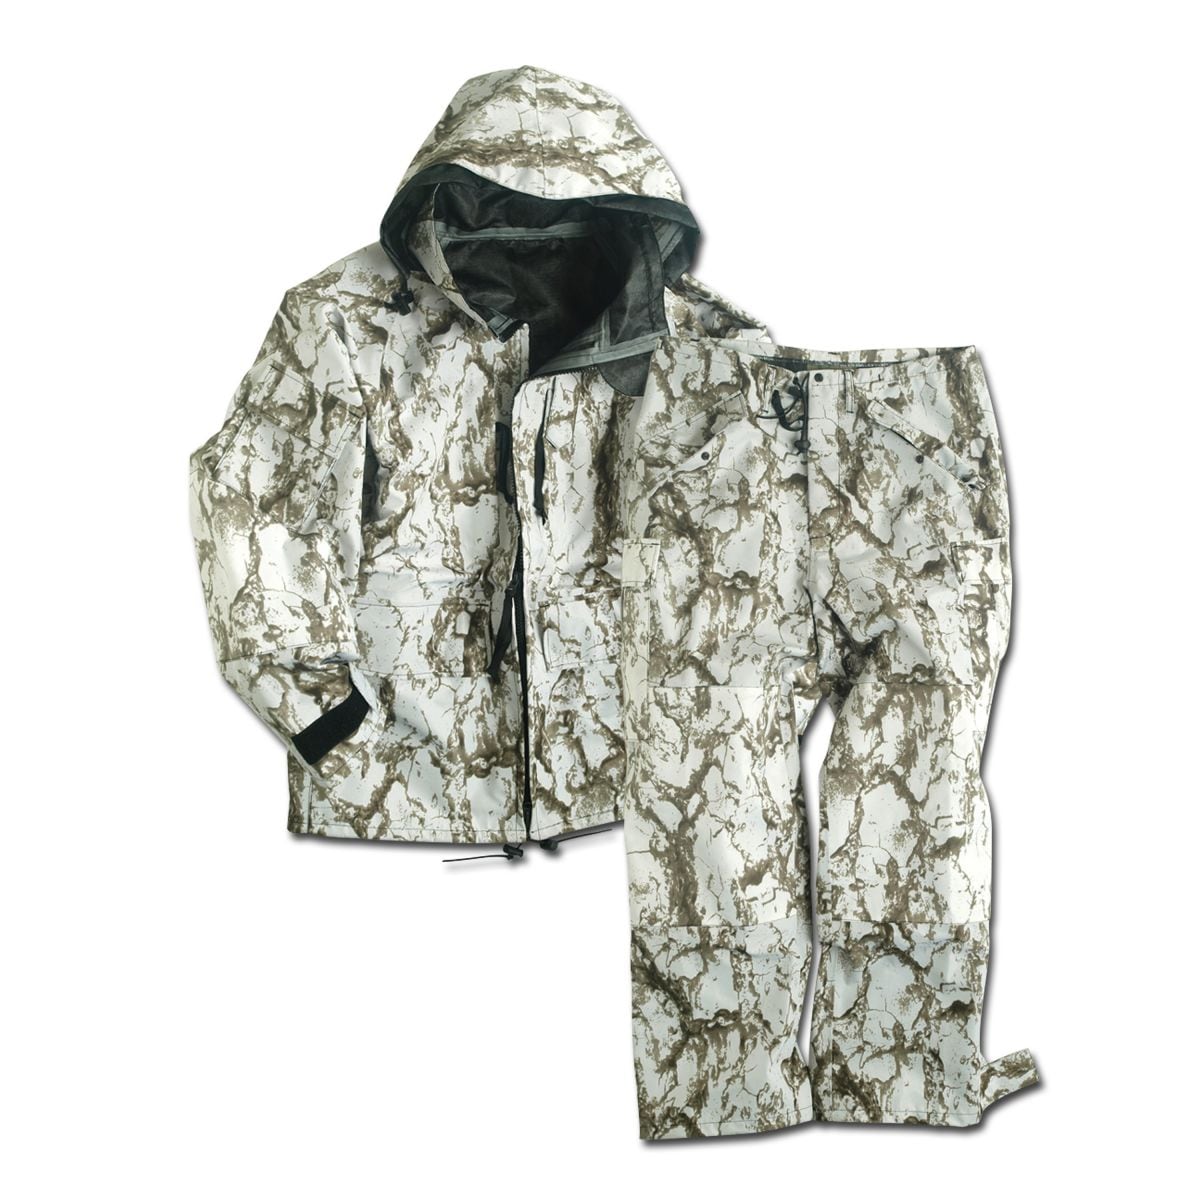 Wet Weather Suit GEN. III - snow camo | Wet Weather Suit GEN. III ...